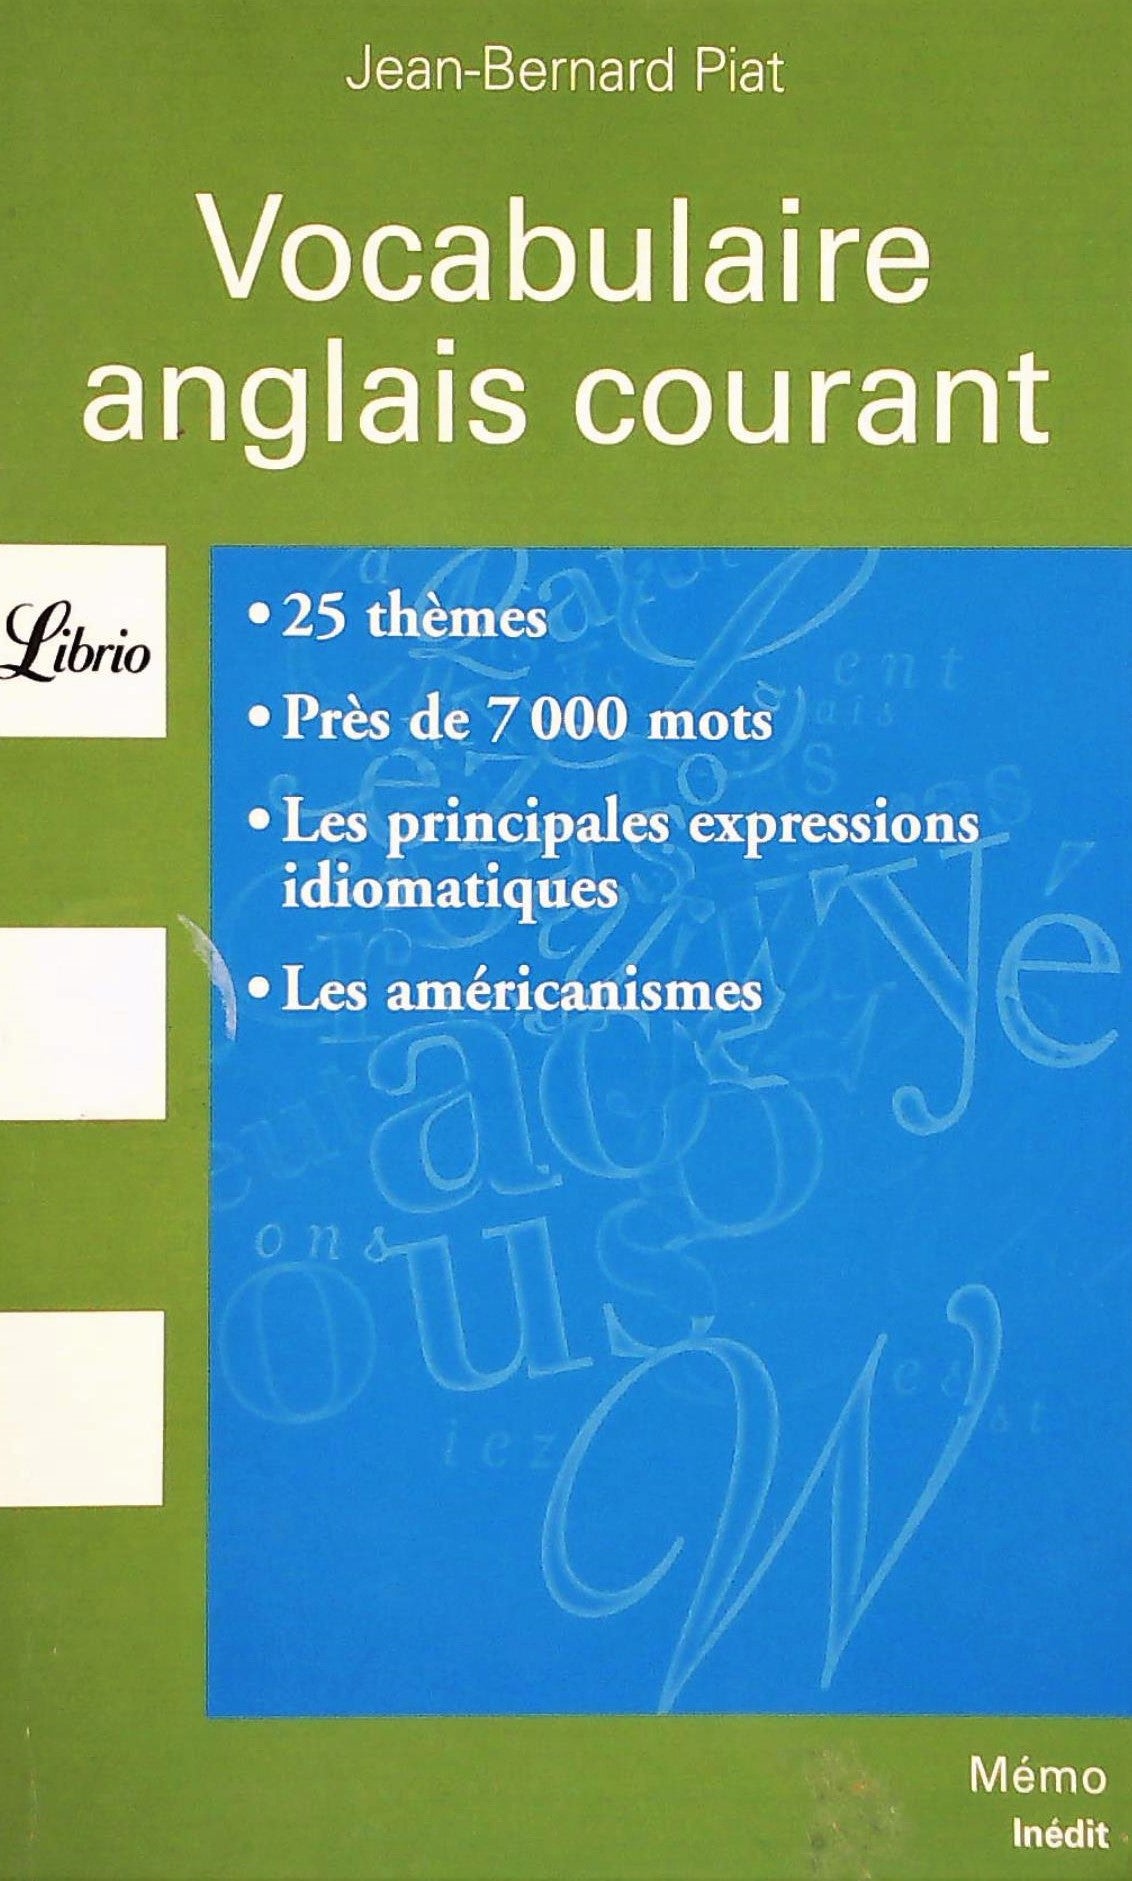 Livre ISBN 2290339385 Vocabulaire anglais courant (Jean-Bernard Piat)